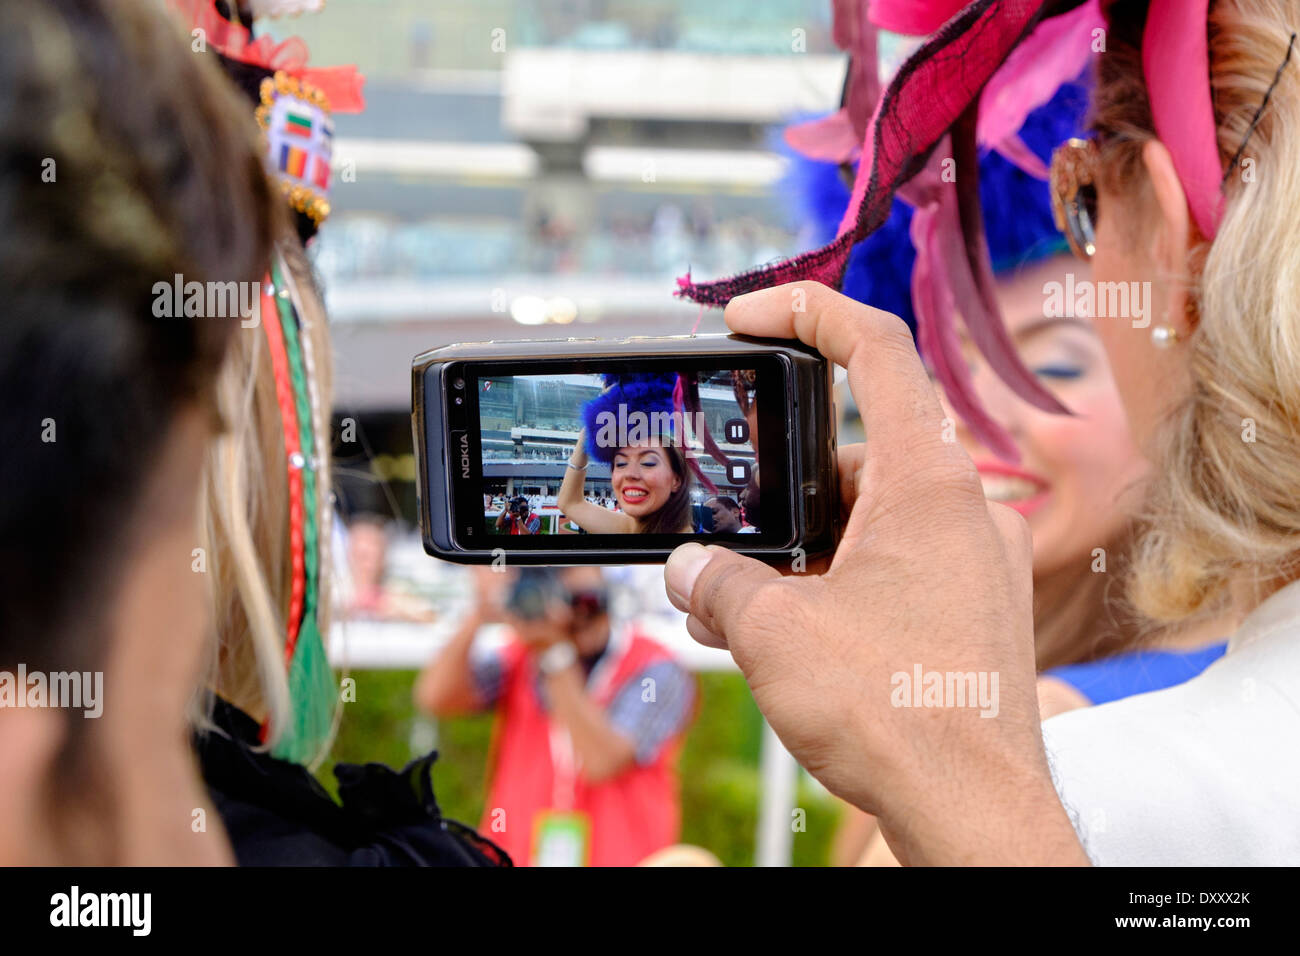 Weibliche Zuschauer bei Dubai World Cup Pferderennen Meisterschaft in Meydan Racecourse in Dubai Vereinigte Arabische Emirate Stockfoto